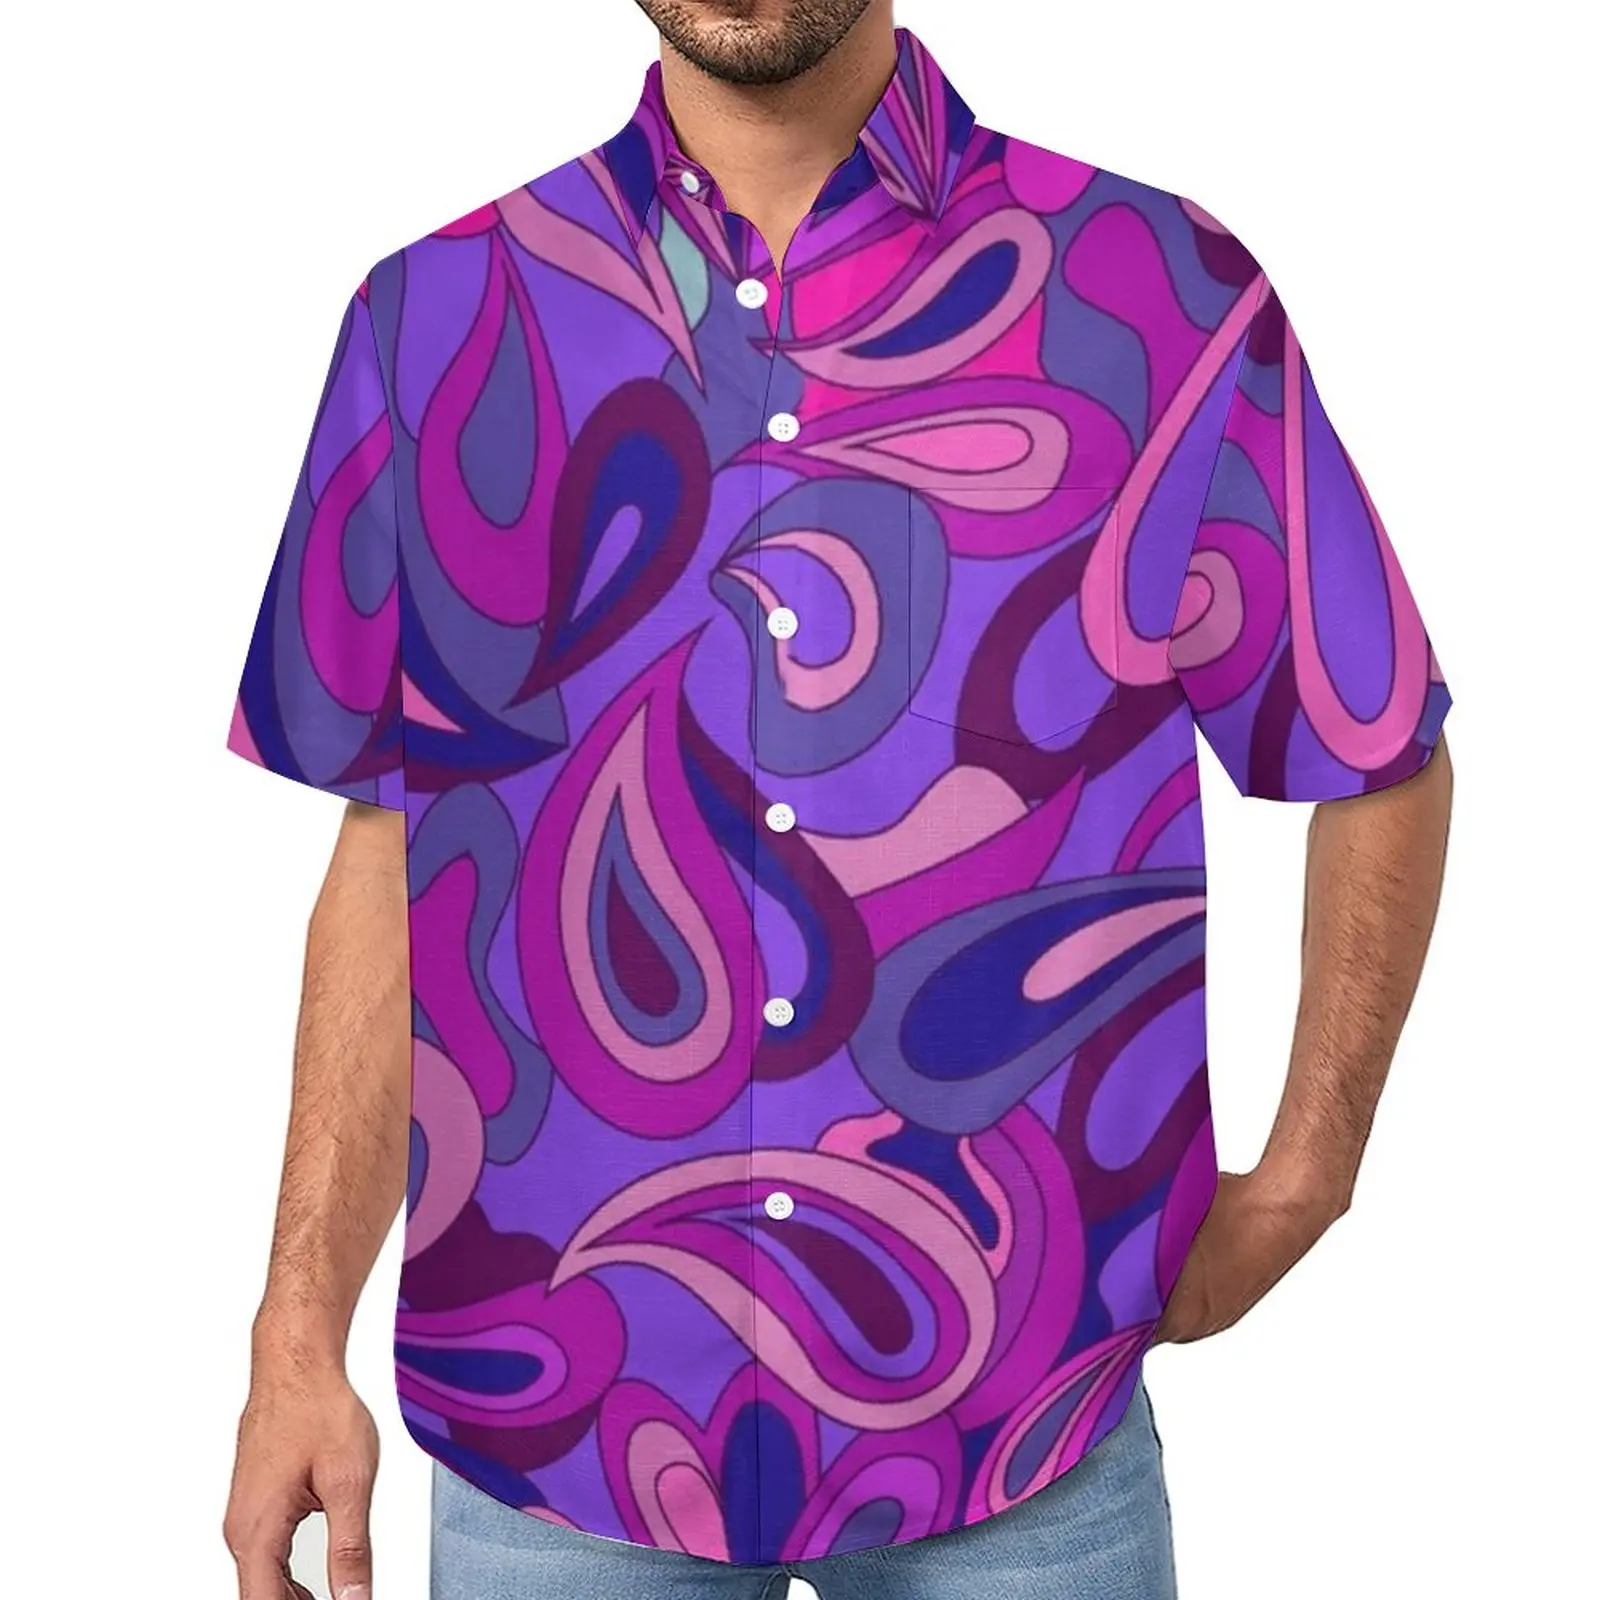 

Фиолетовые повседневные рубашки с принтом пейсли, психоделическая пляжная рубашка в стиле хиппи, летние уличные стильные блузки, мужские графические блузки